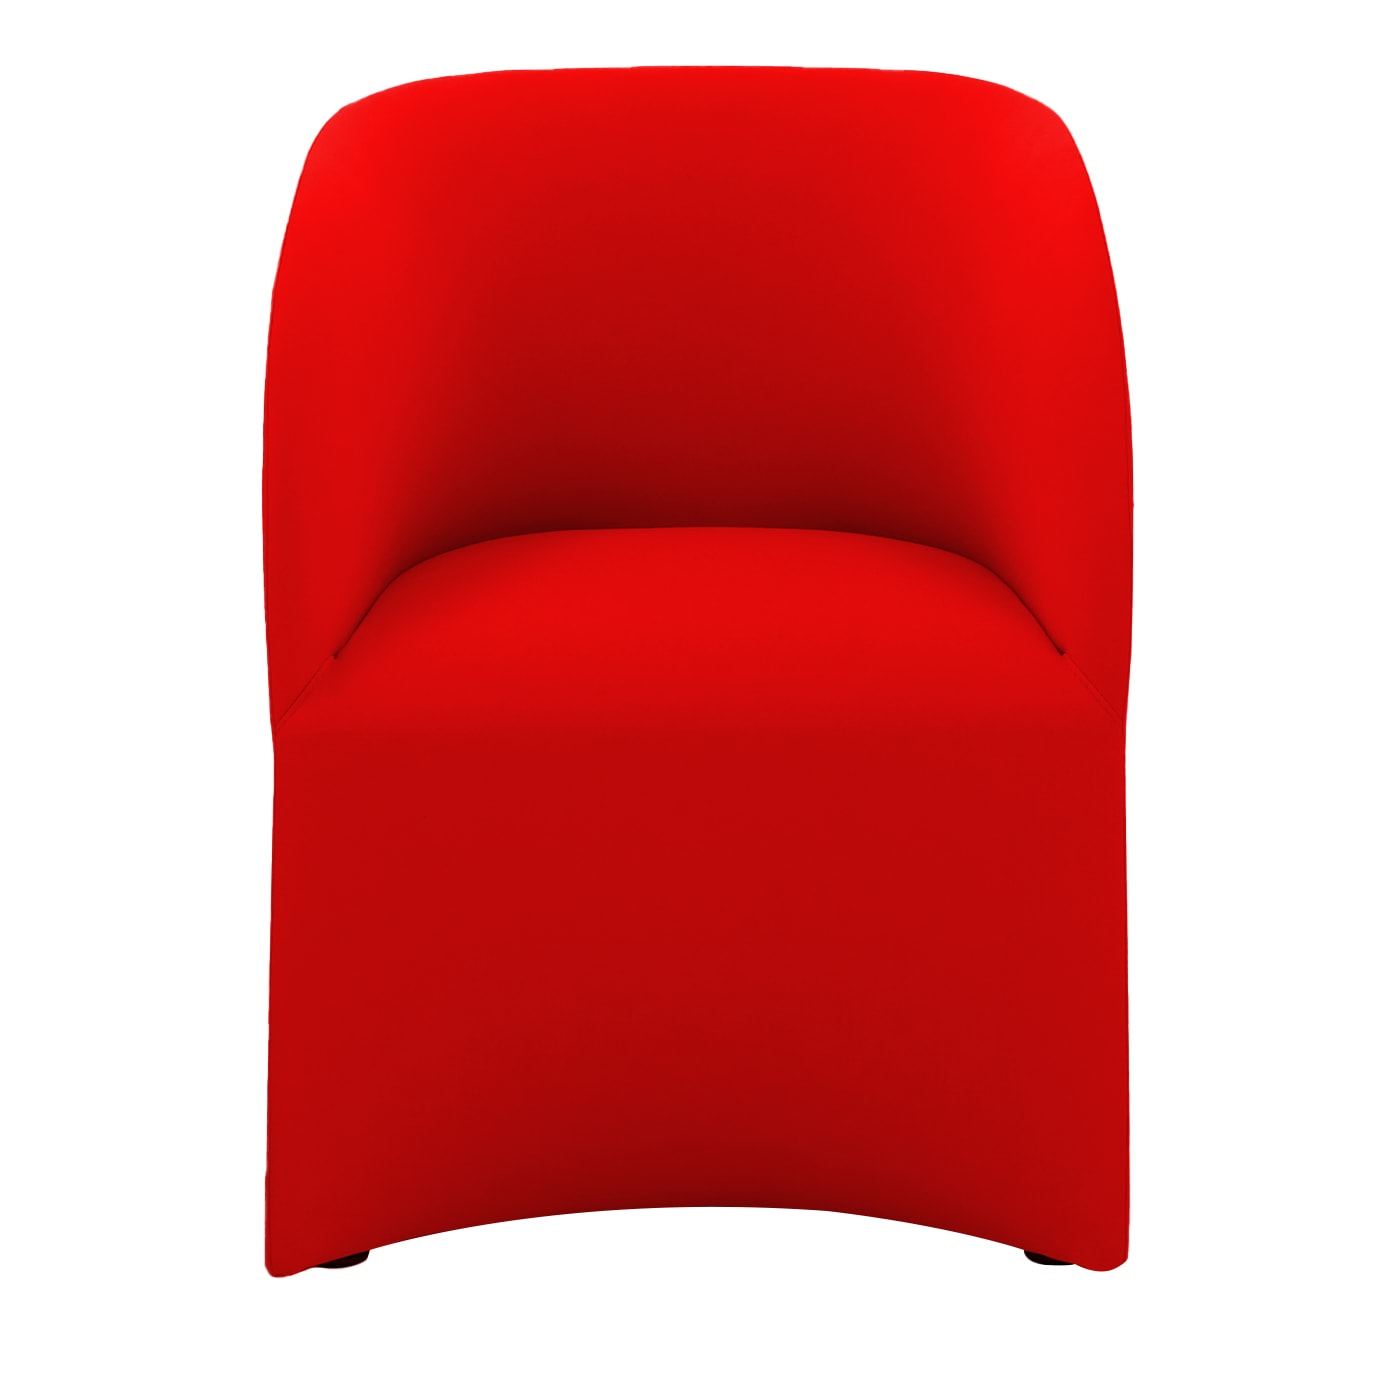 Milly Big Red Armchair by Basaglia + Rota Nodari - Viganò & C.